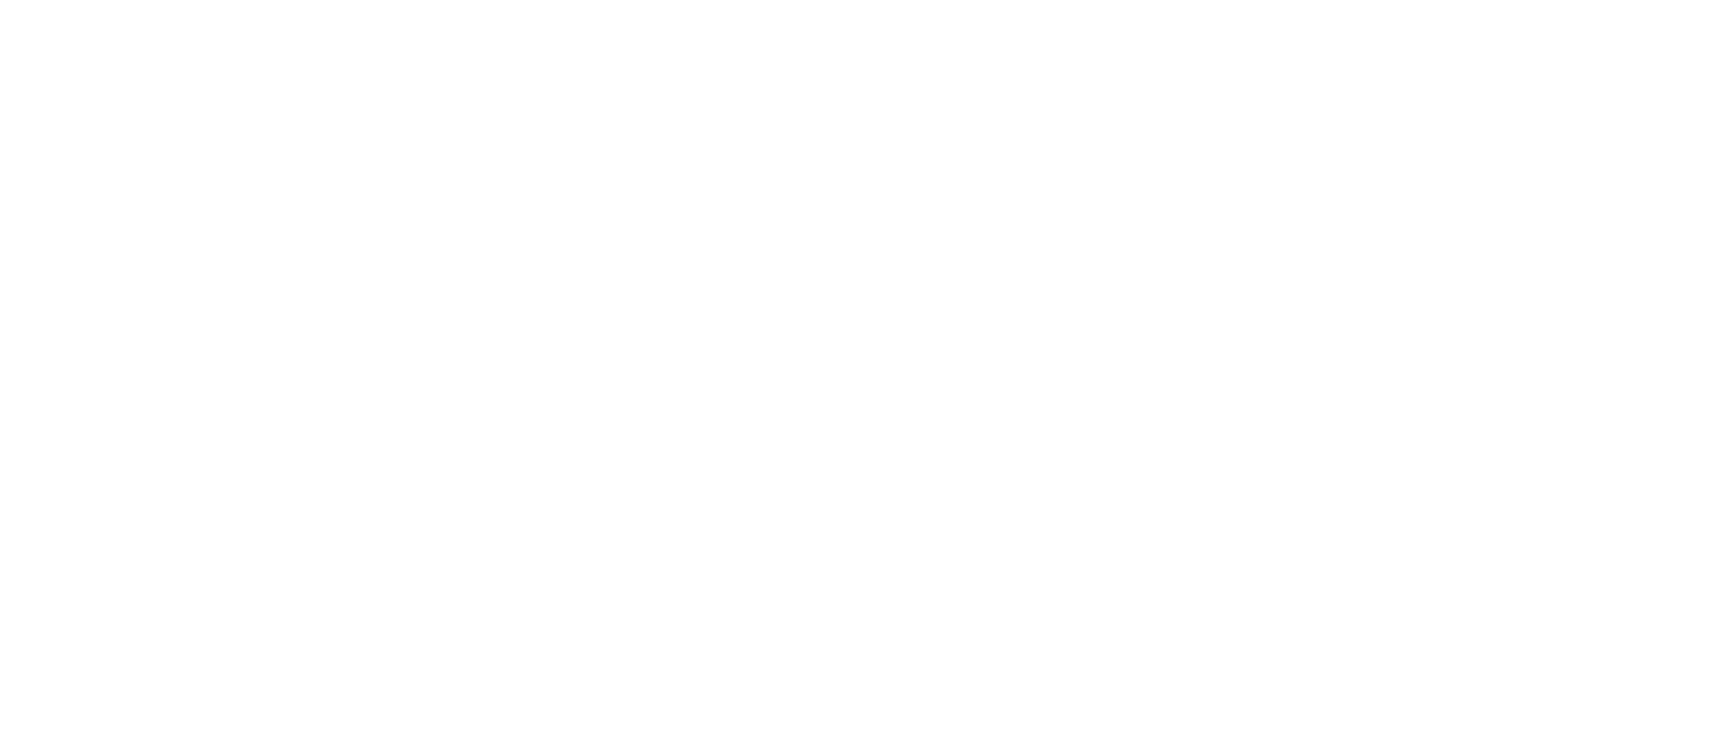 The Cafe Life Magazine